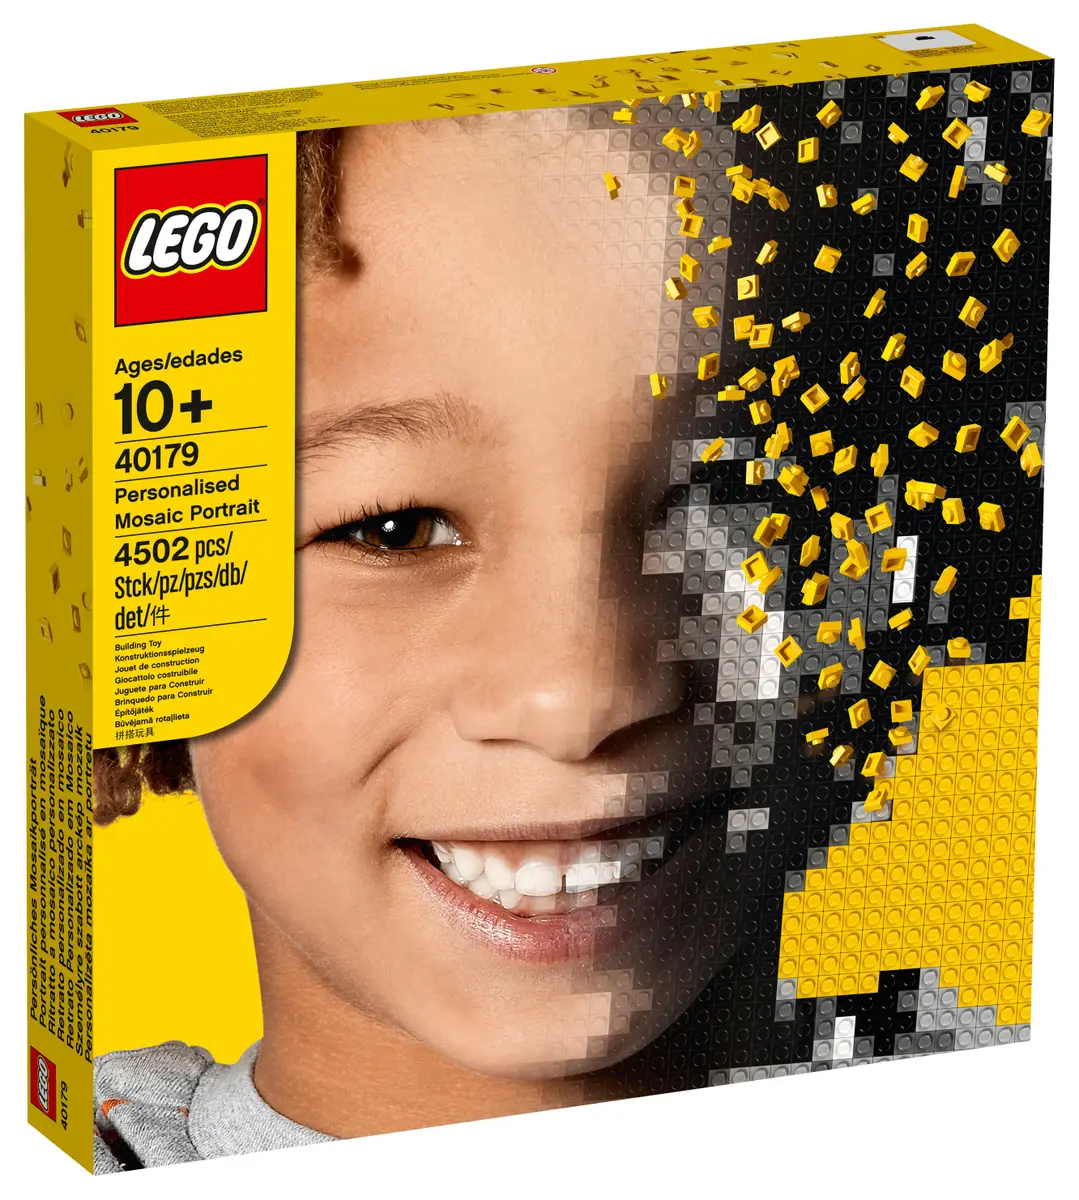 LEGO Shop